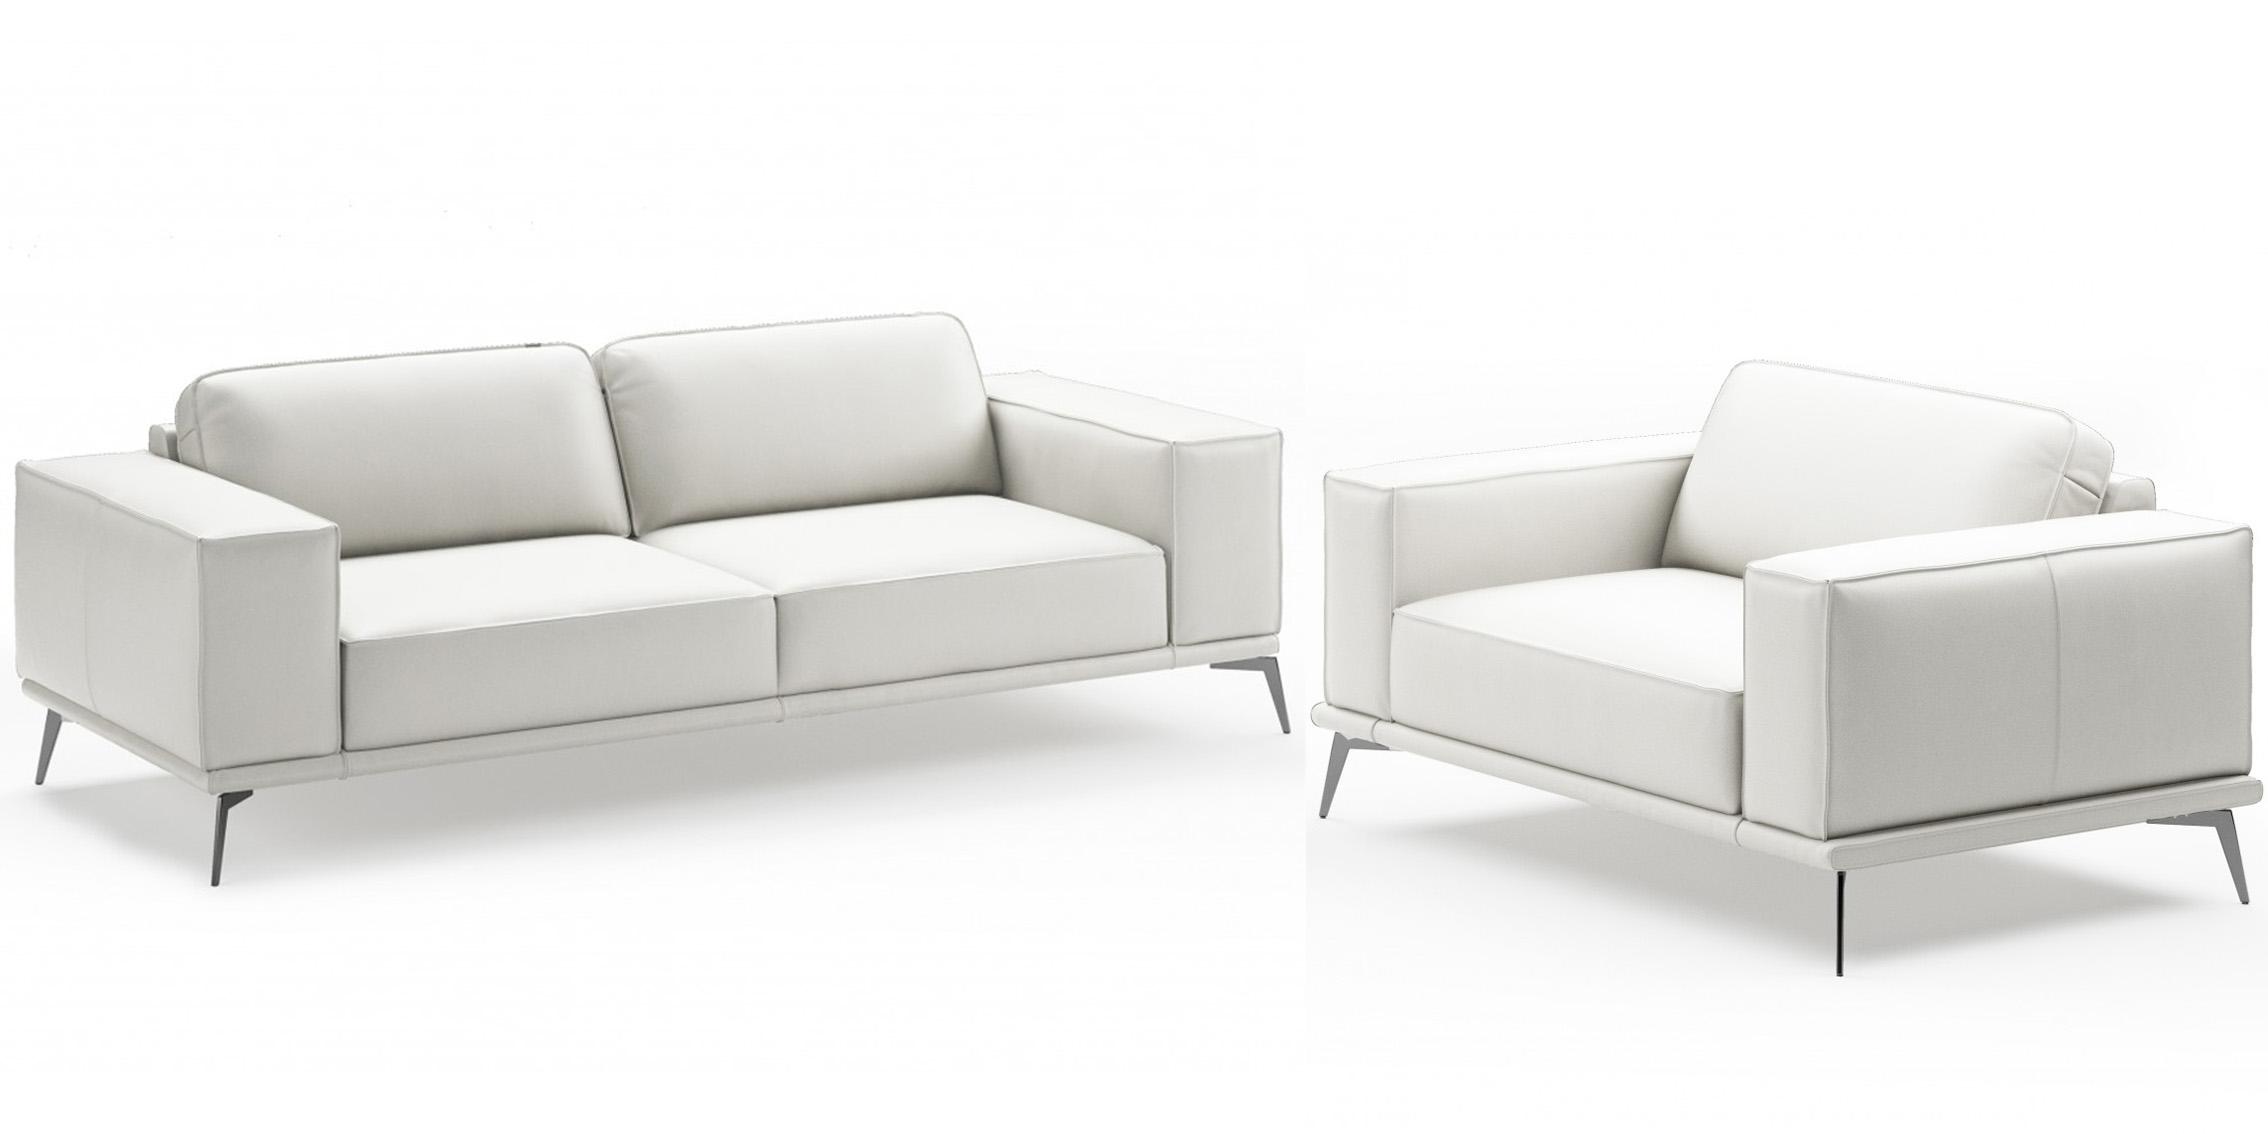 Contemporary, Modern Sofa Set VGCCSOHO-WHT-S-Set-2 VGCCSOHO-WHT-S-Set-2 in White Italian Leather